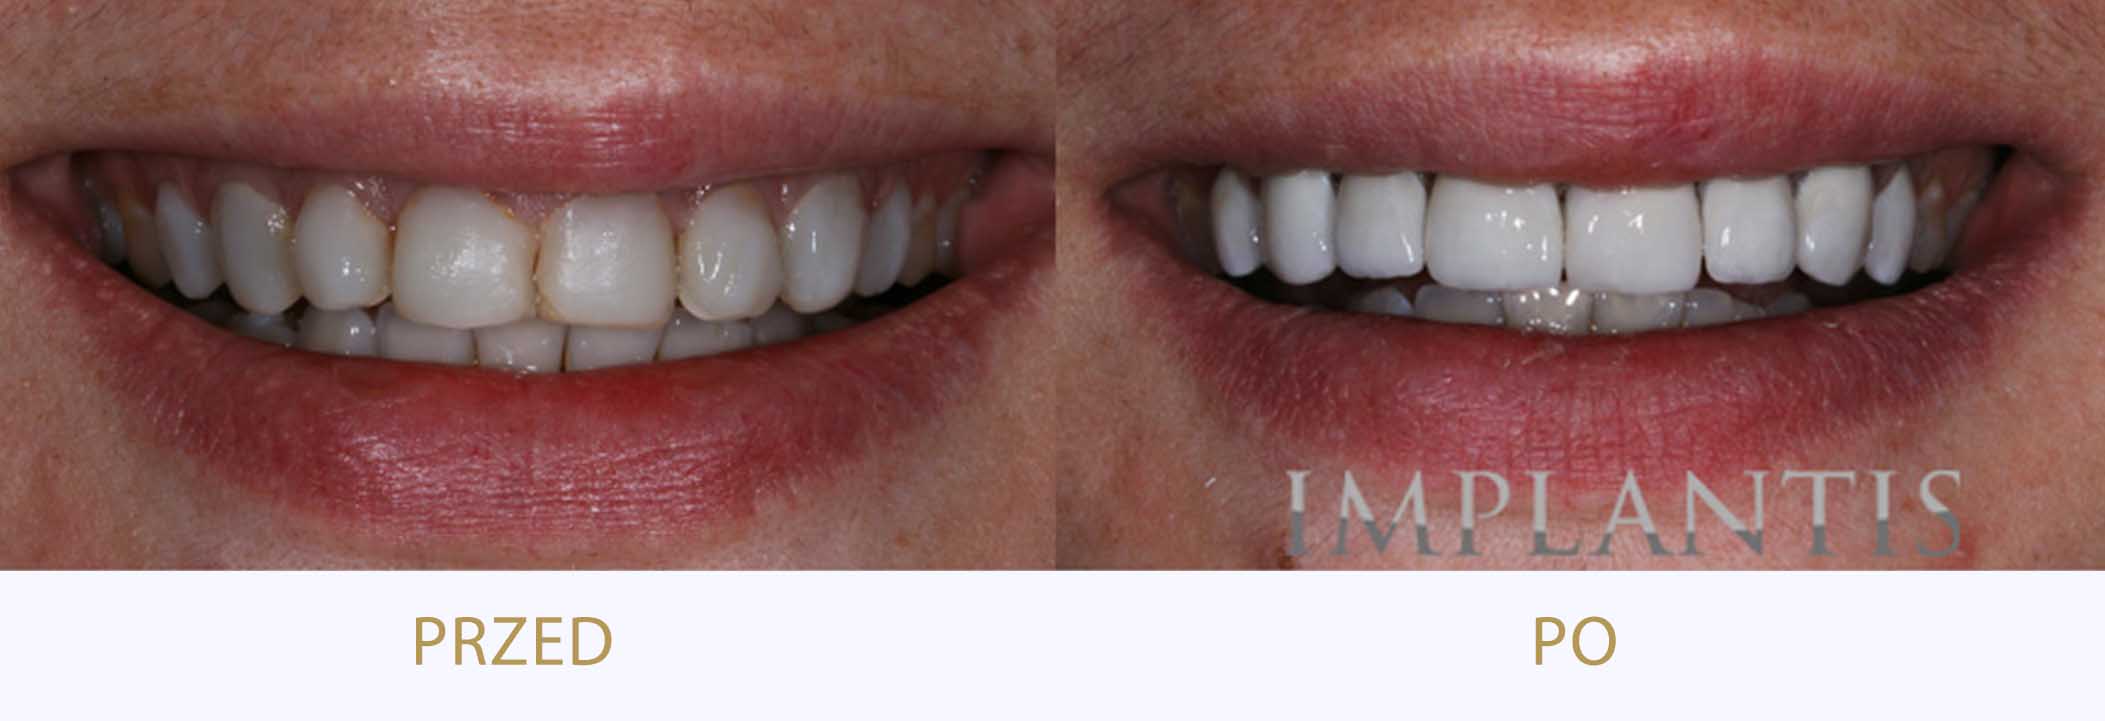 zęby przed i po bondingu